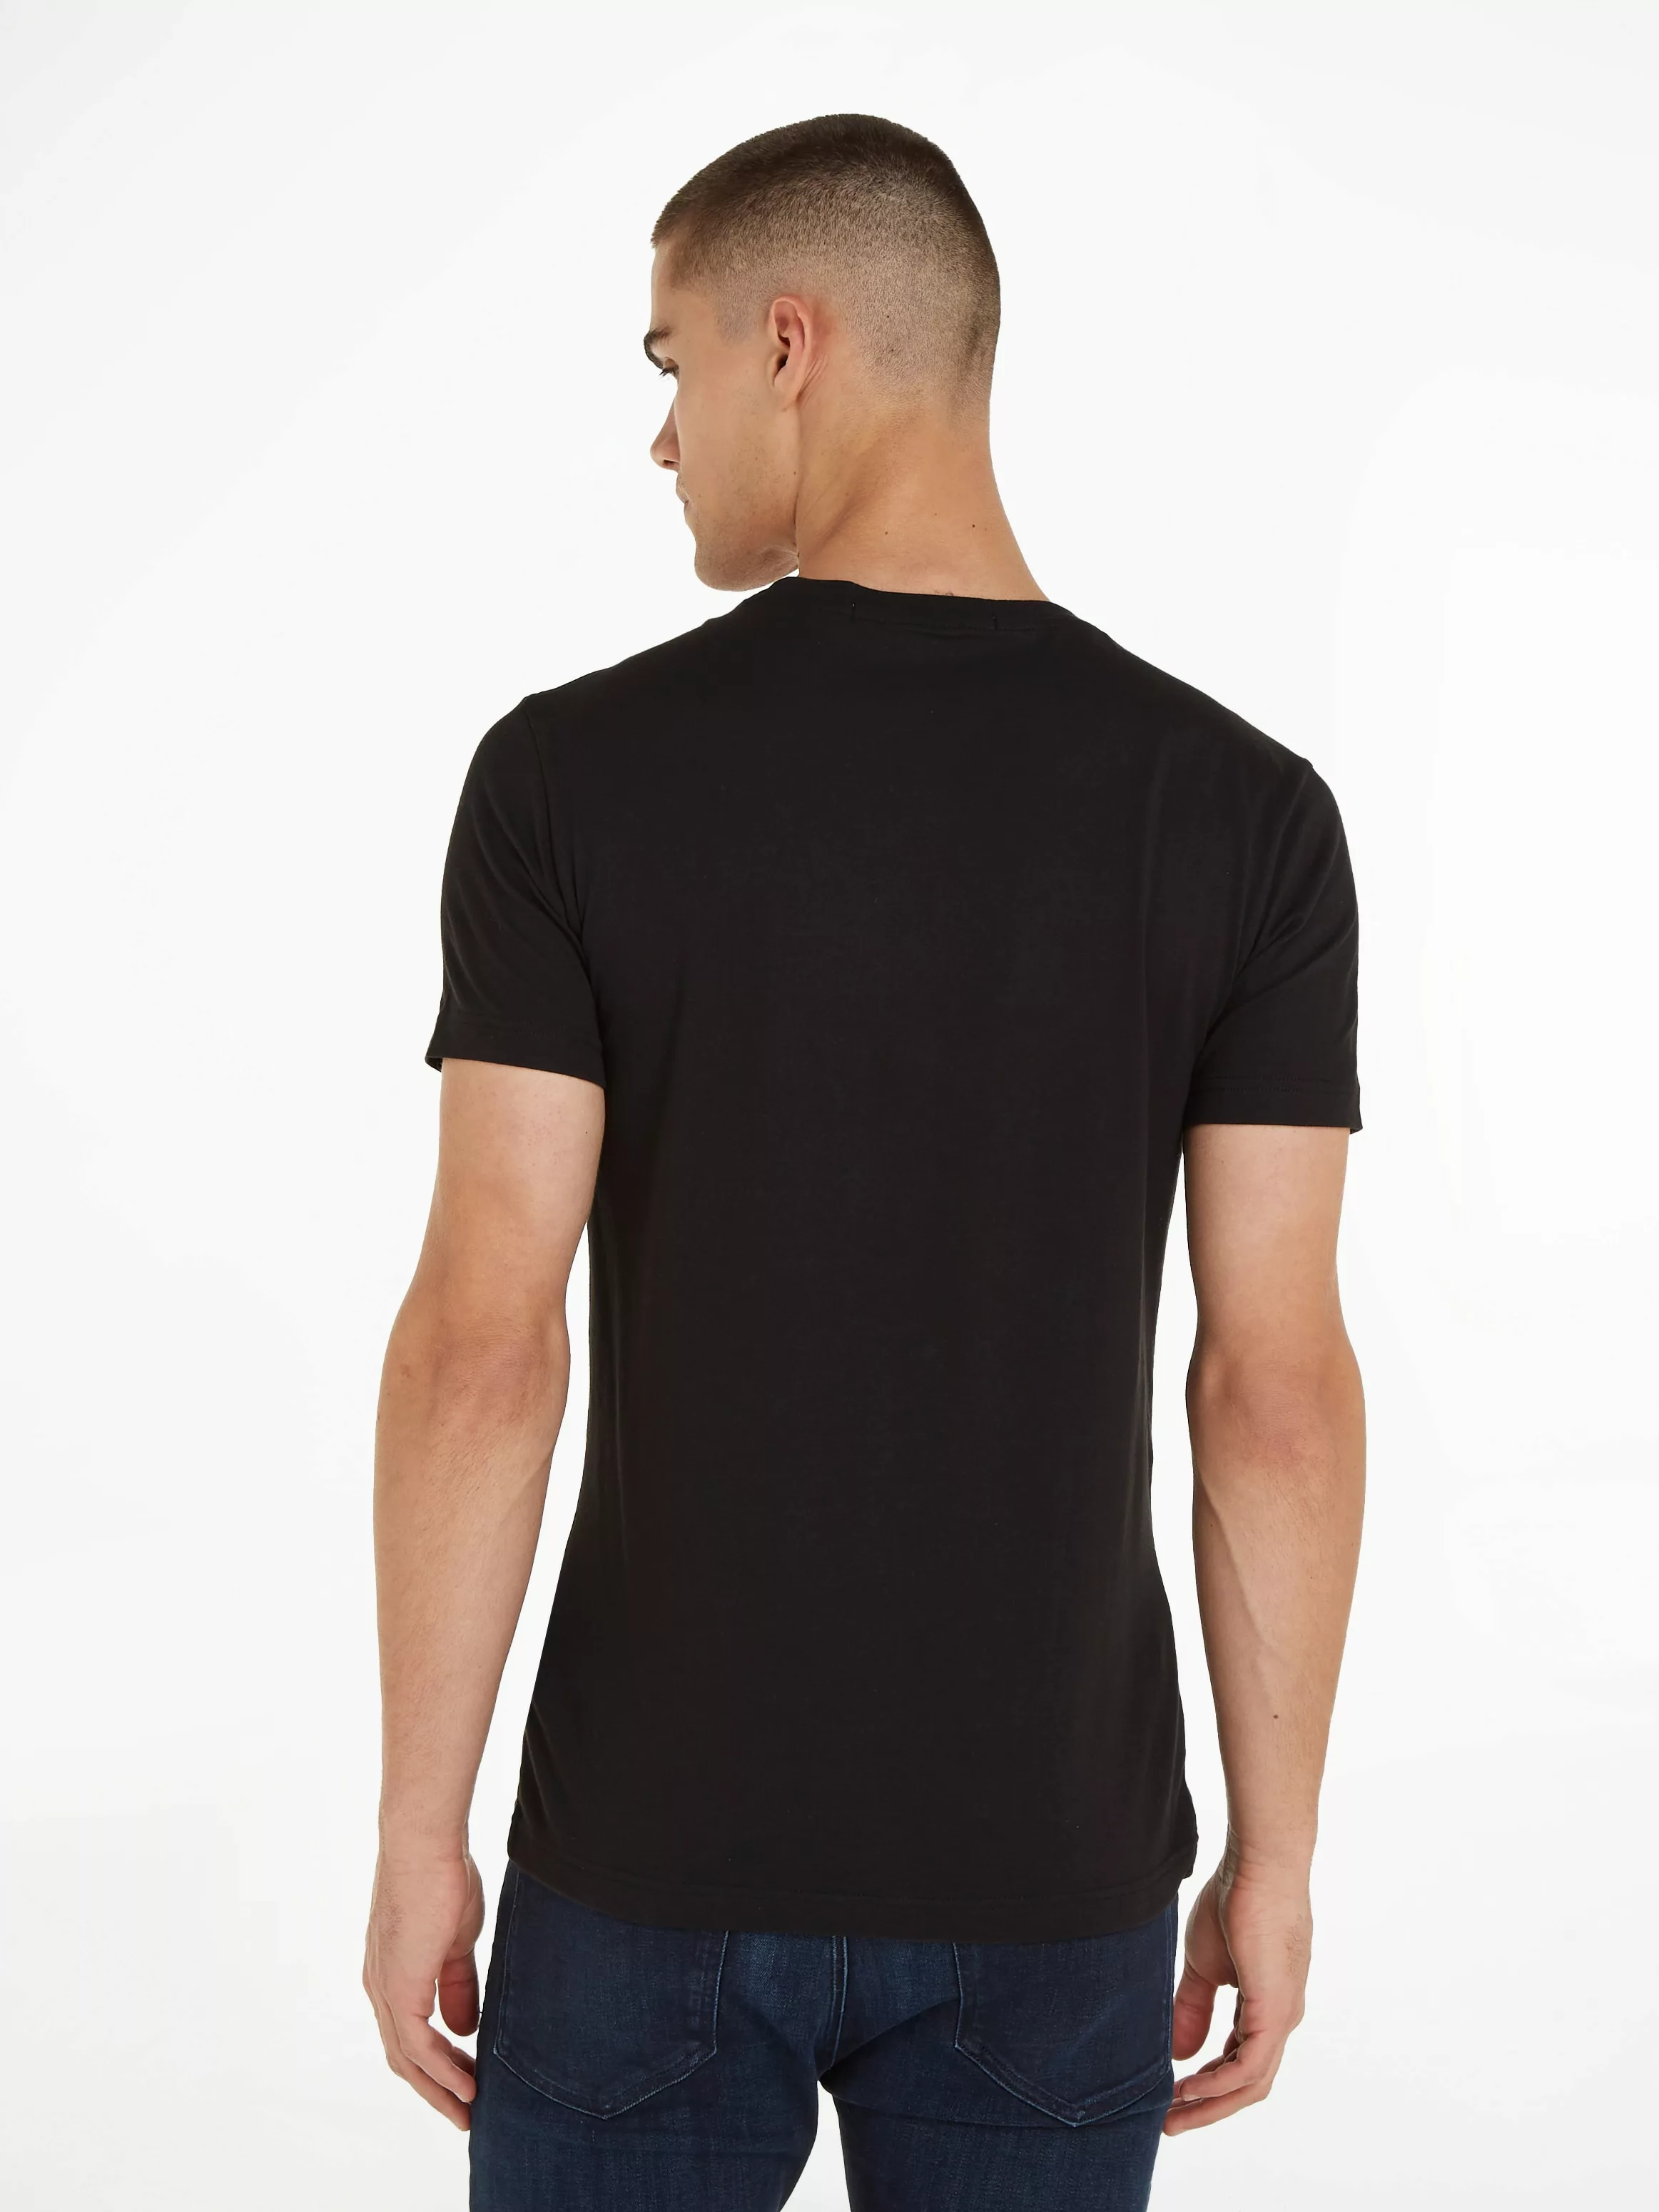 Calvin Klein Jeans T-Shirt "CORE INSTITUTIONAL LOGO SLIM TEE" günstig online kaufen